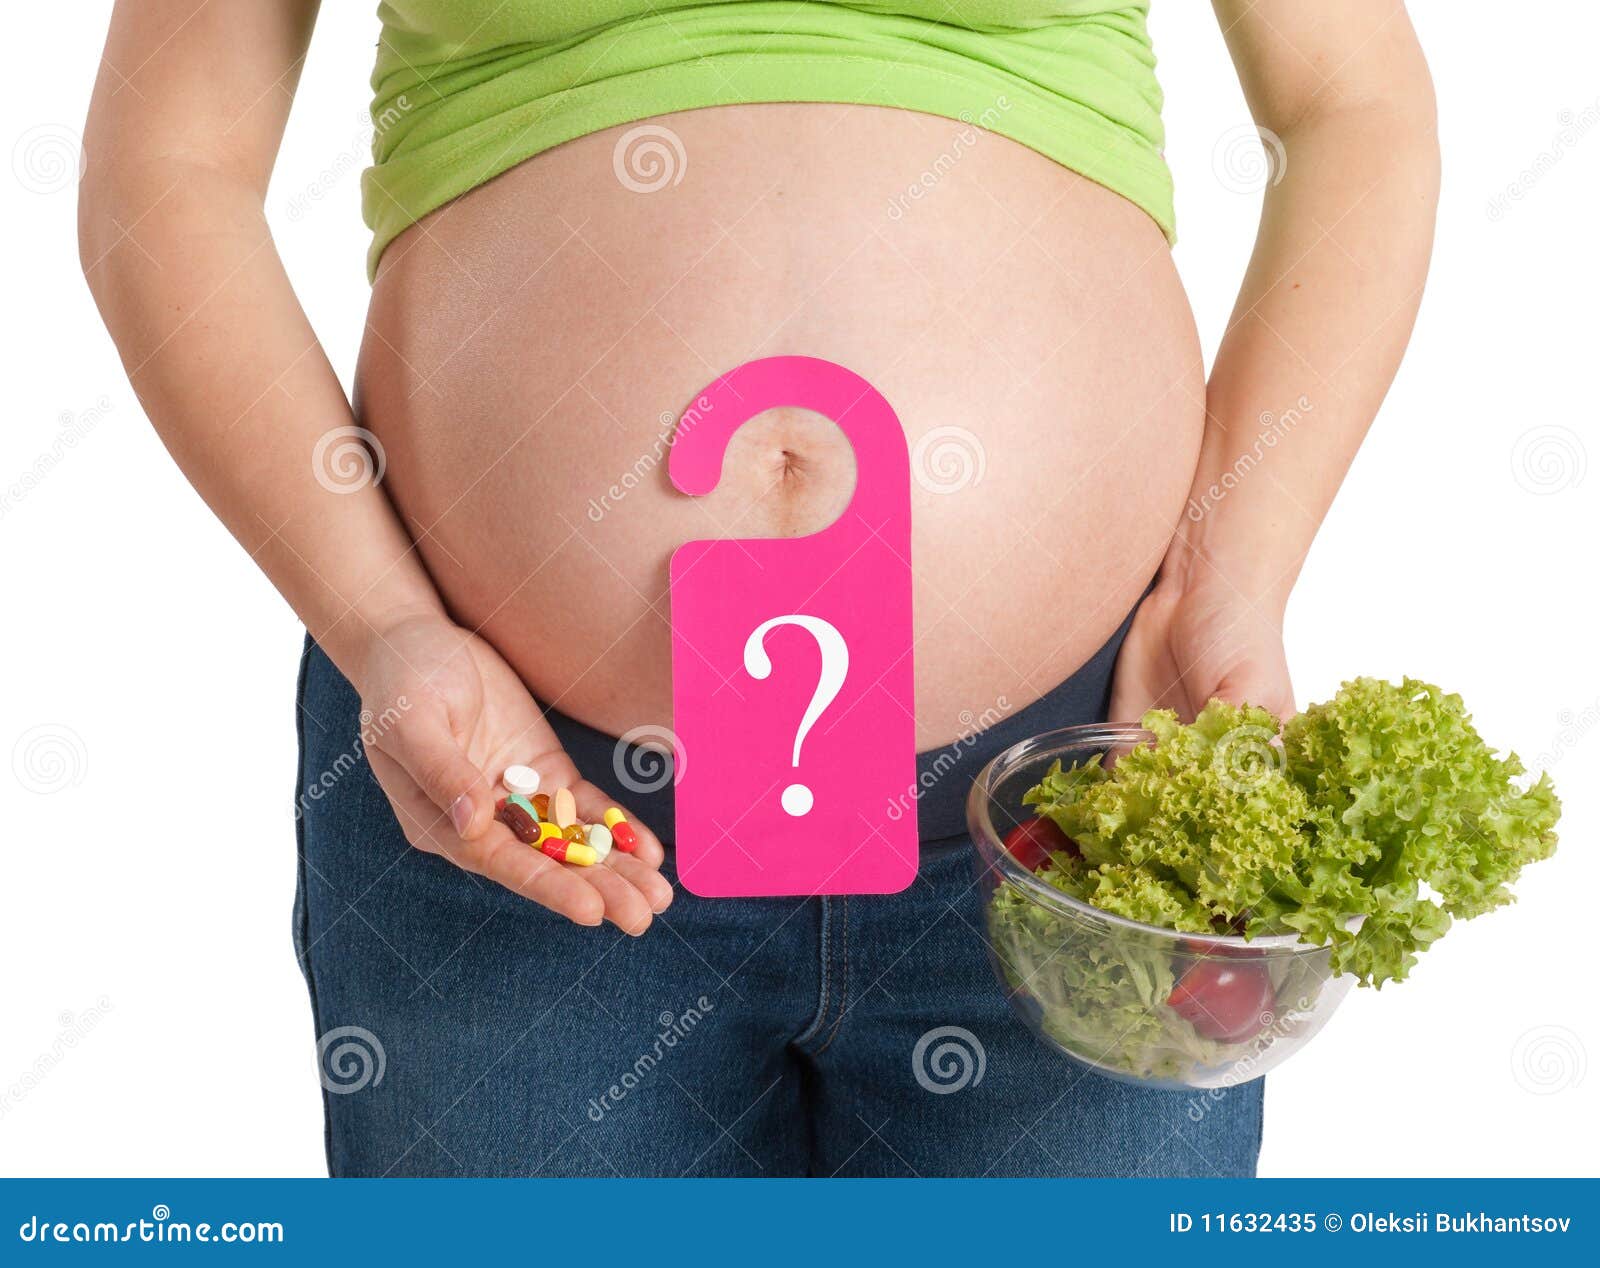 Витамин а для беременных. Витамины для беременности. Еда для беременных. Питание беременной витамины.